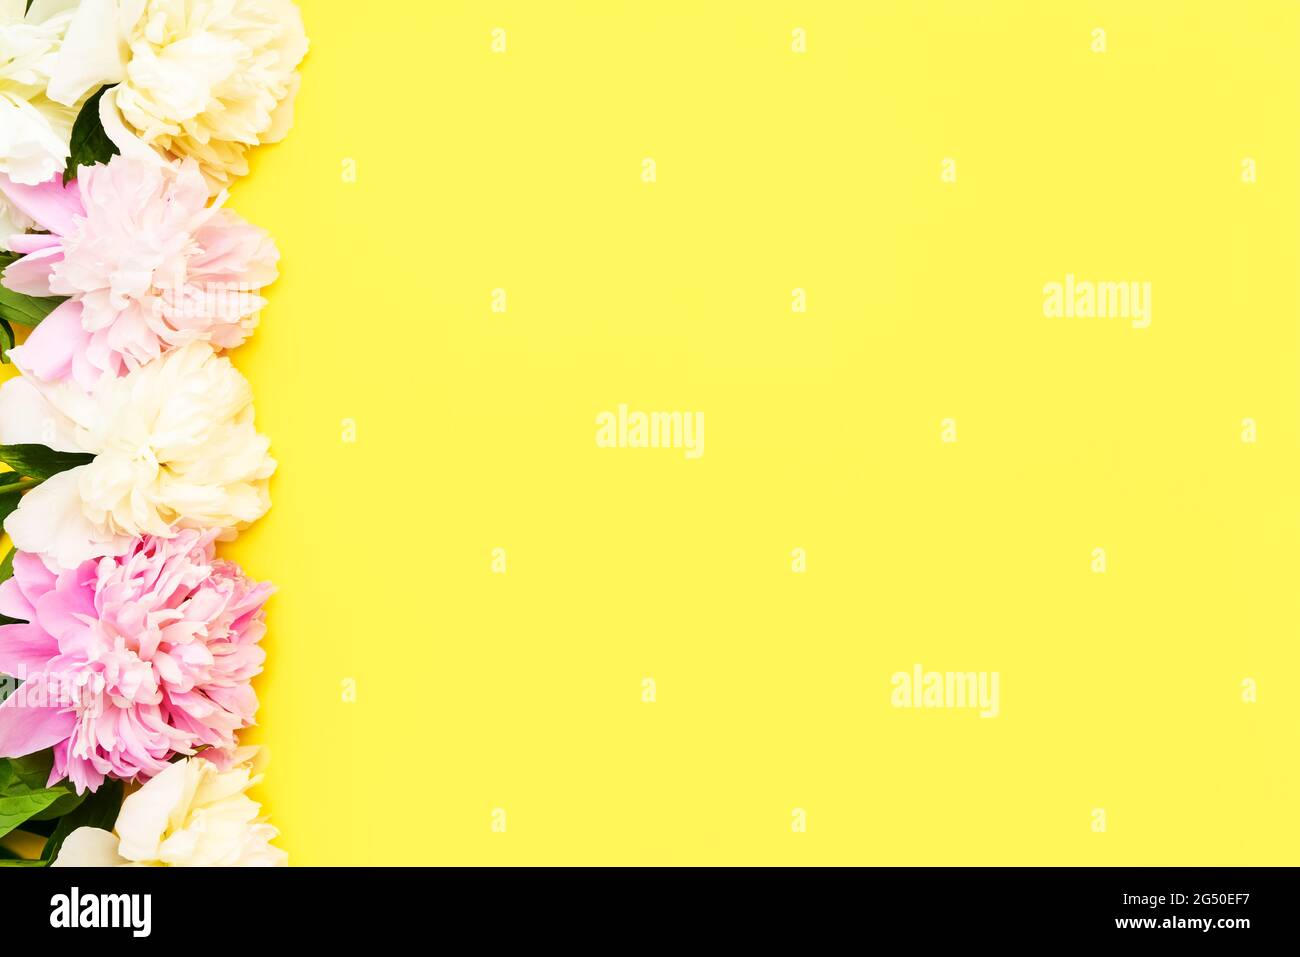 Bordure florale en boutons de fleurs de pivoines roses et blanches sur fond jaune vif. Concept de fête de la Saint-Valentin, de fête des mères et d'anniversaire. Banque D'Images